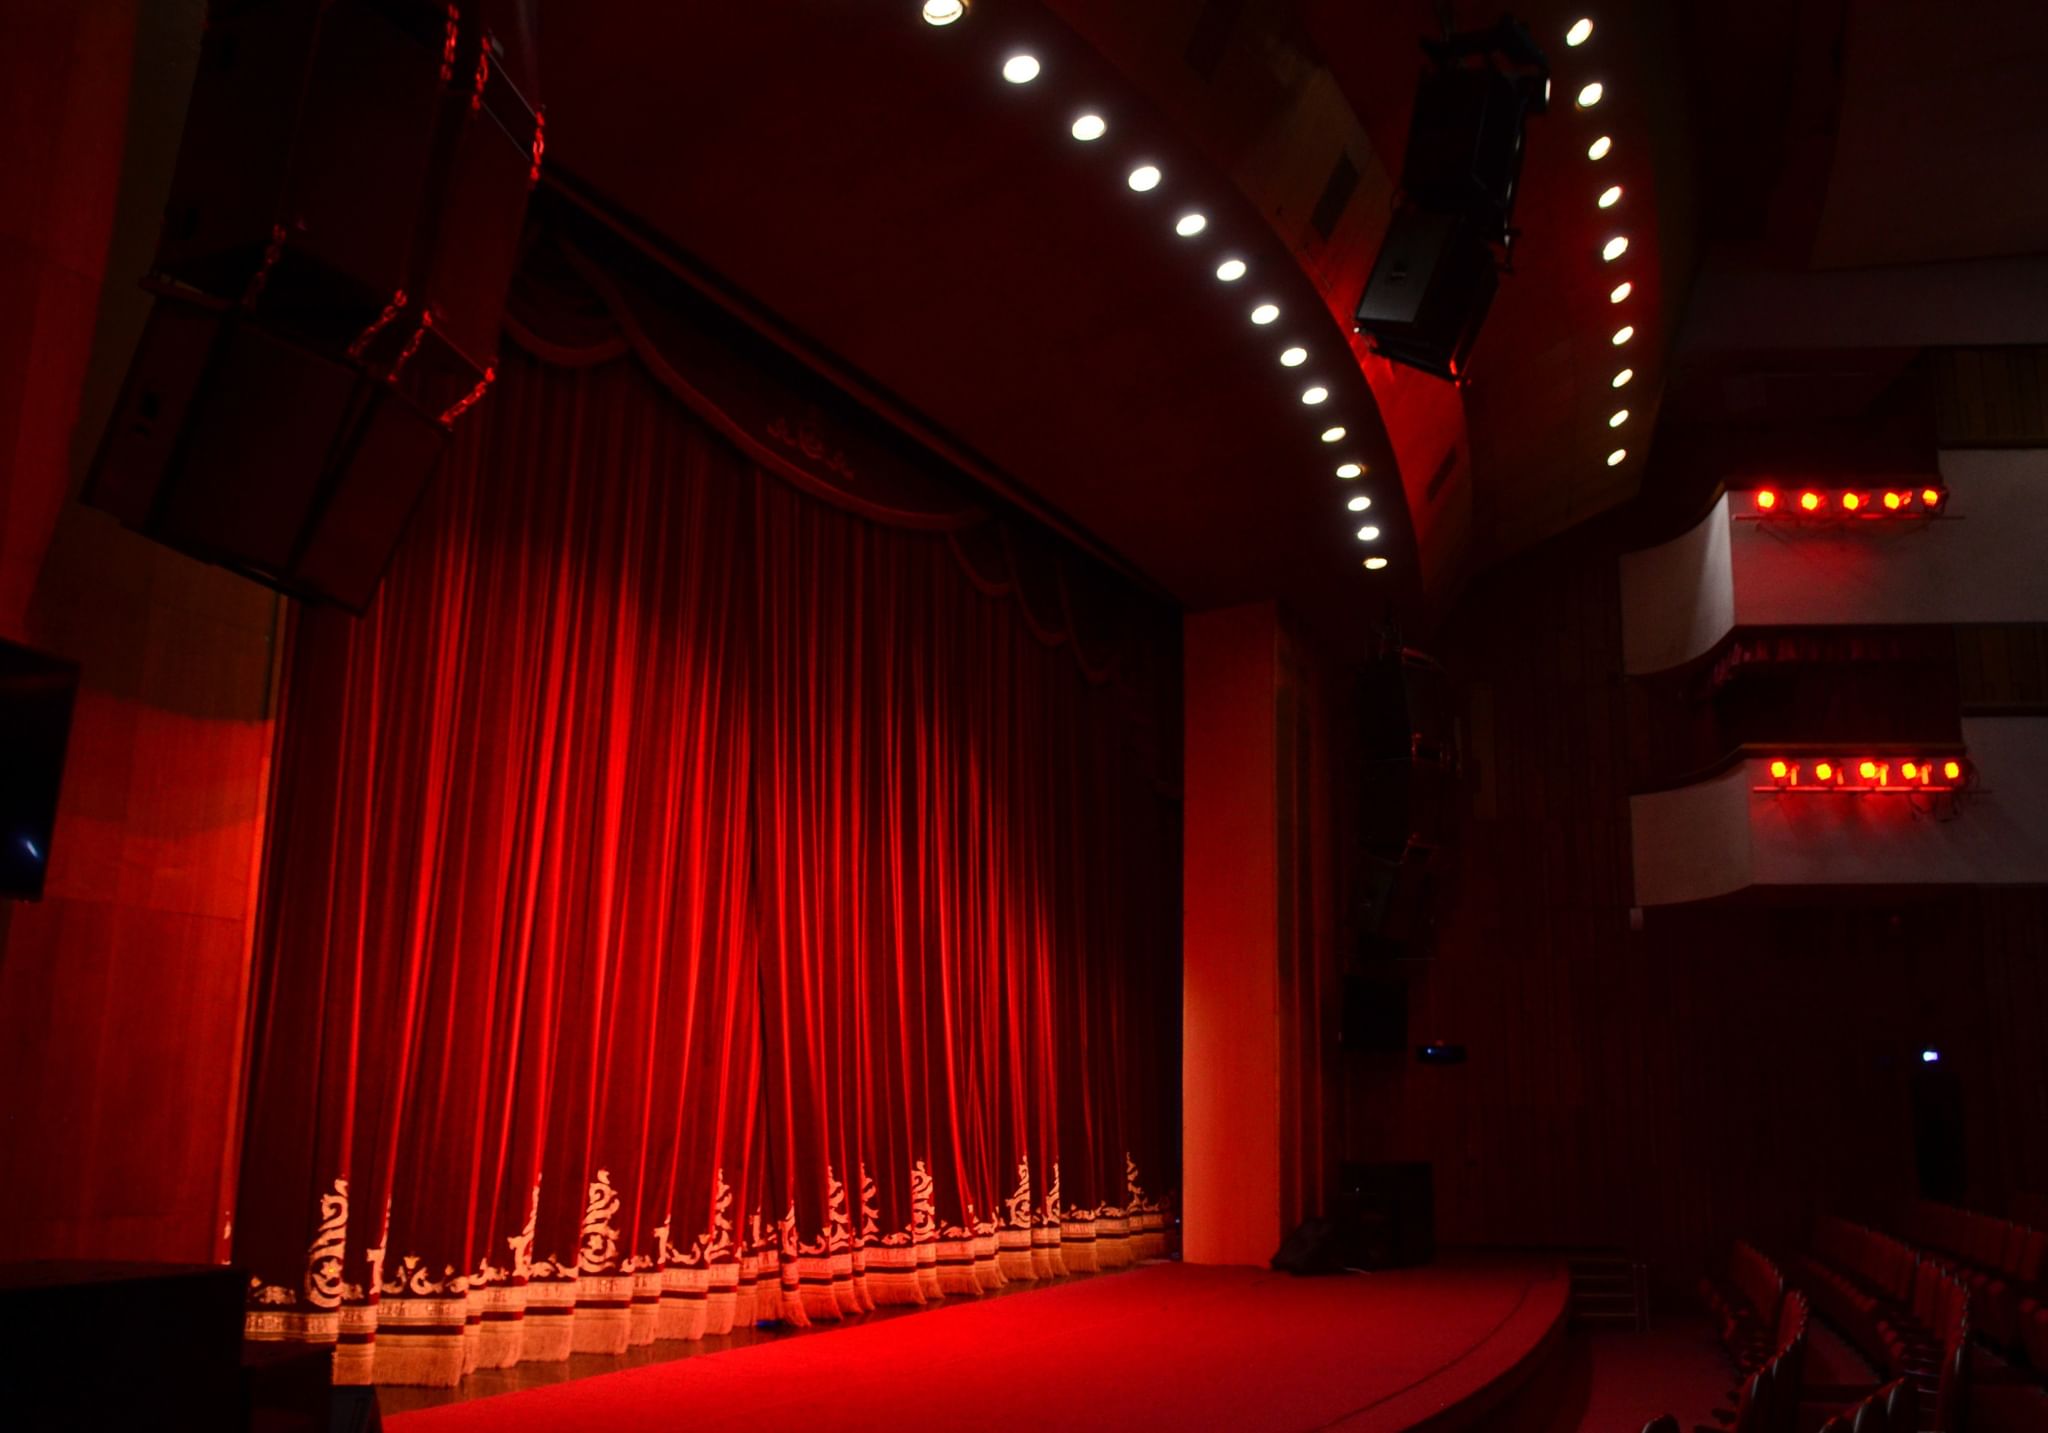 Государственный театр крым